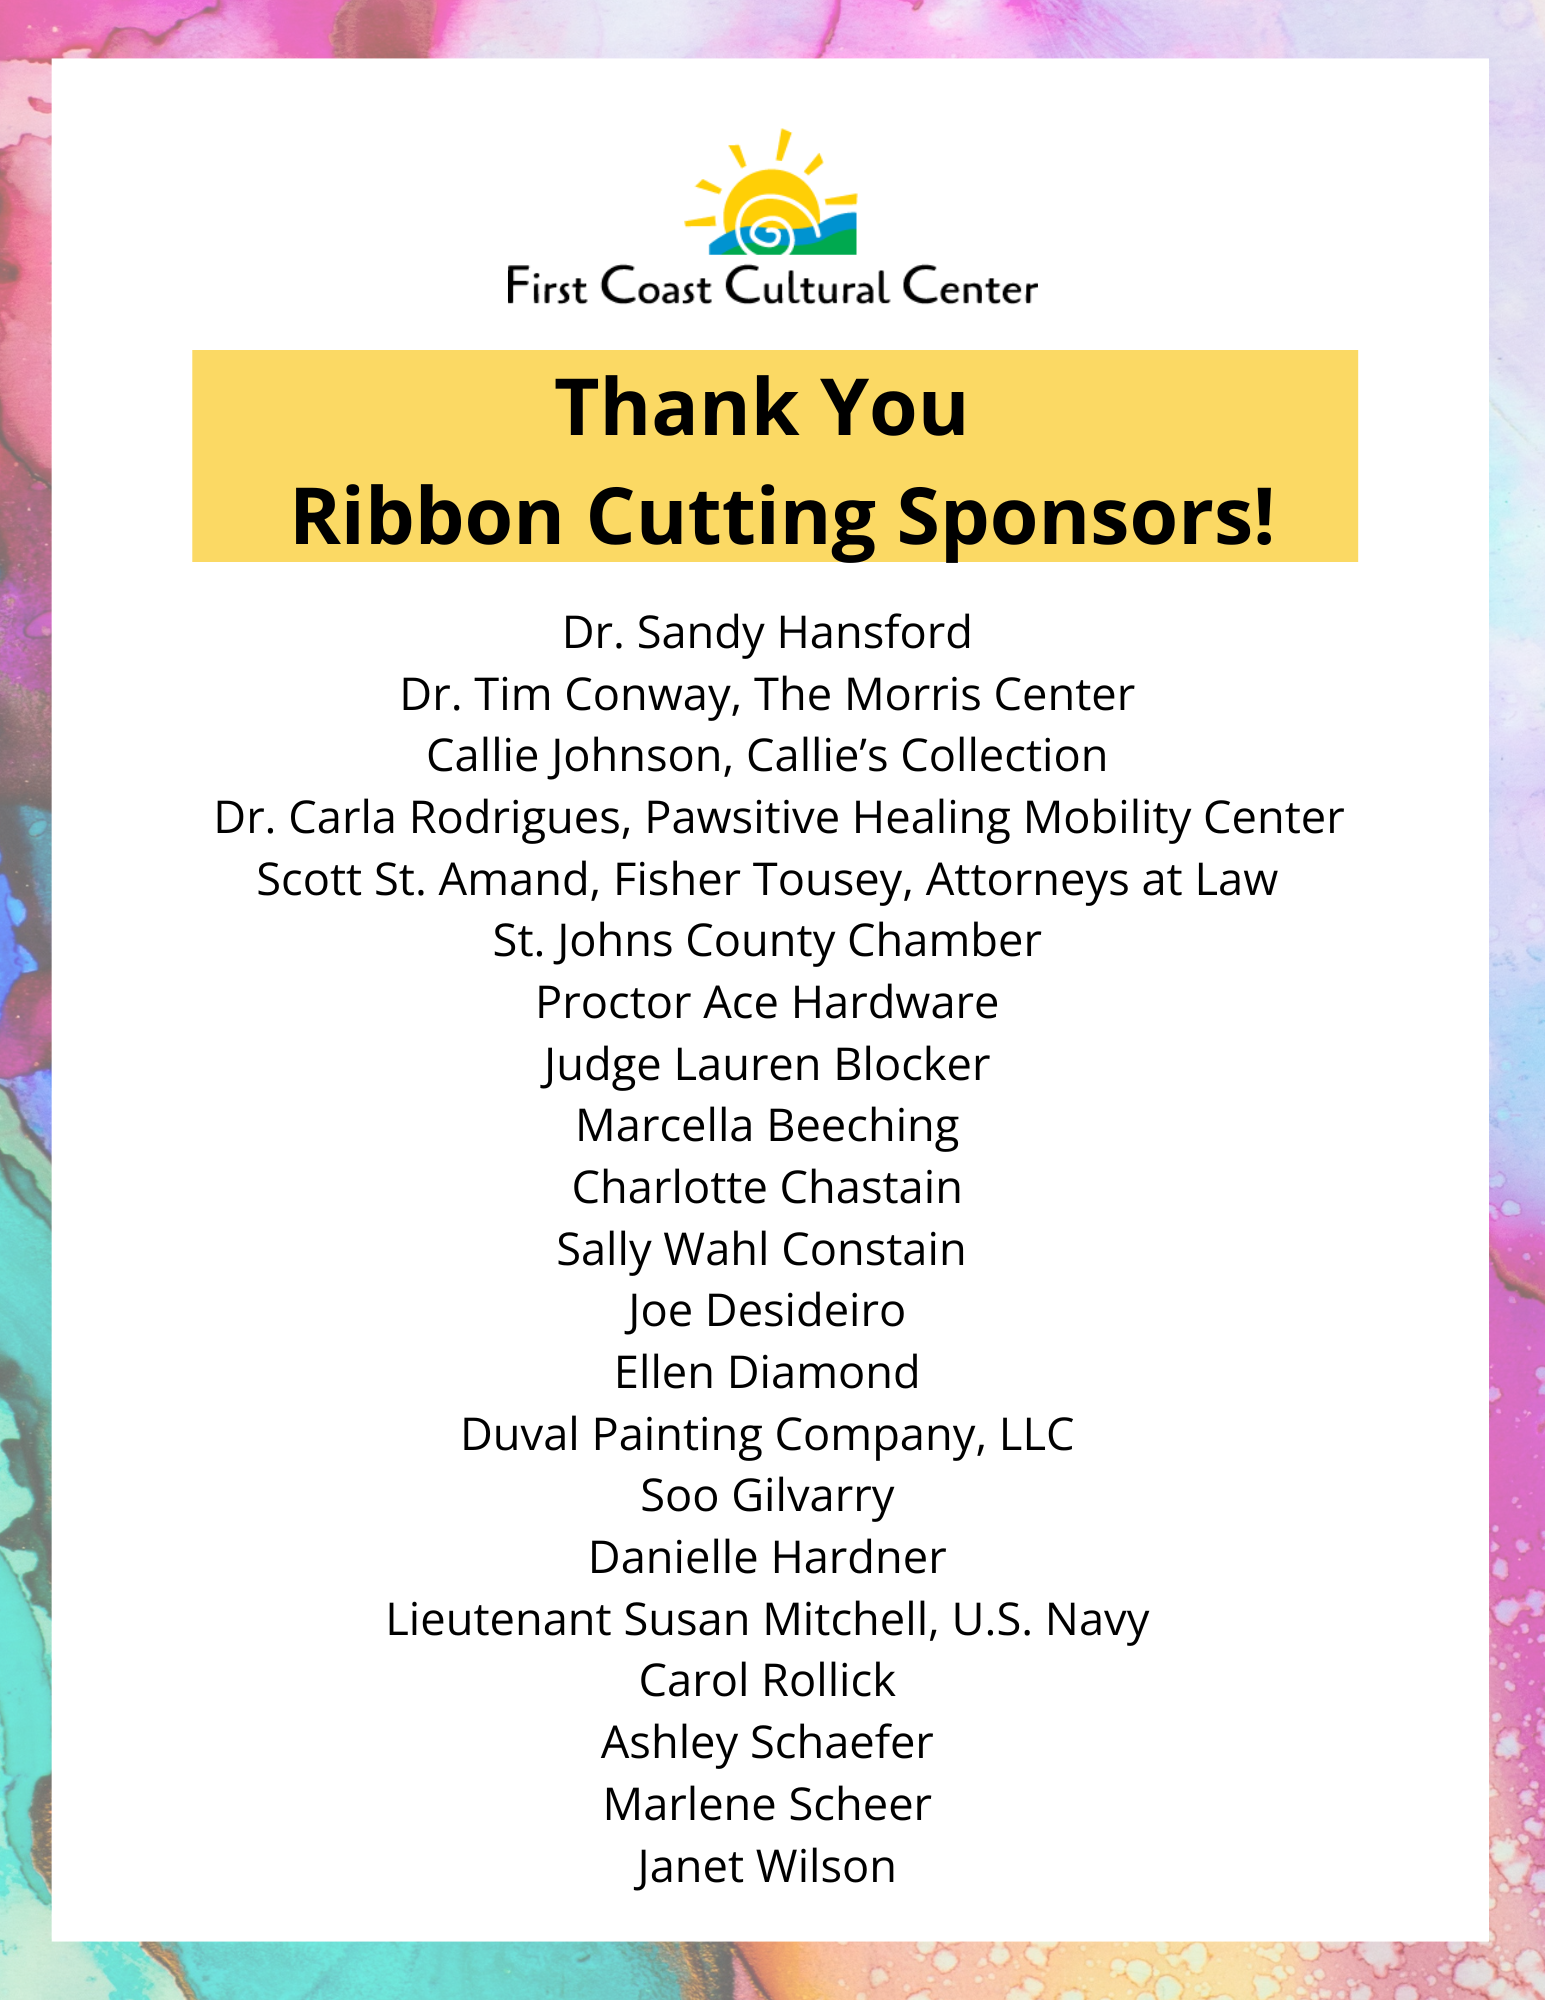 Ribbon cutting vendor sponsors 1